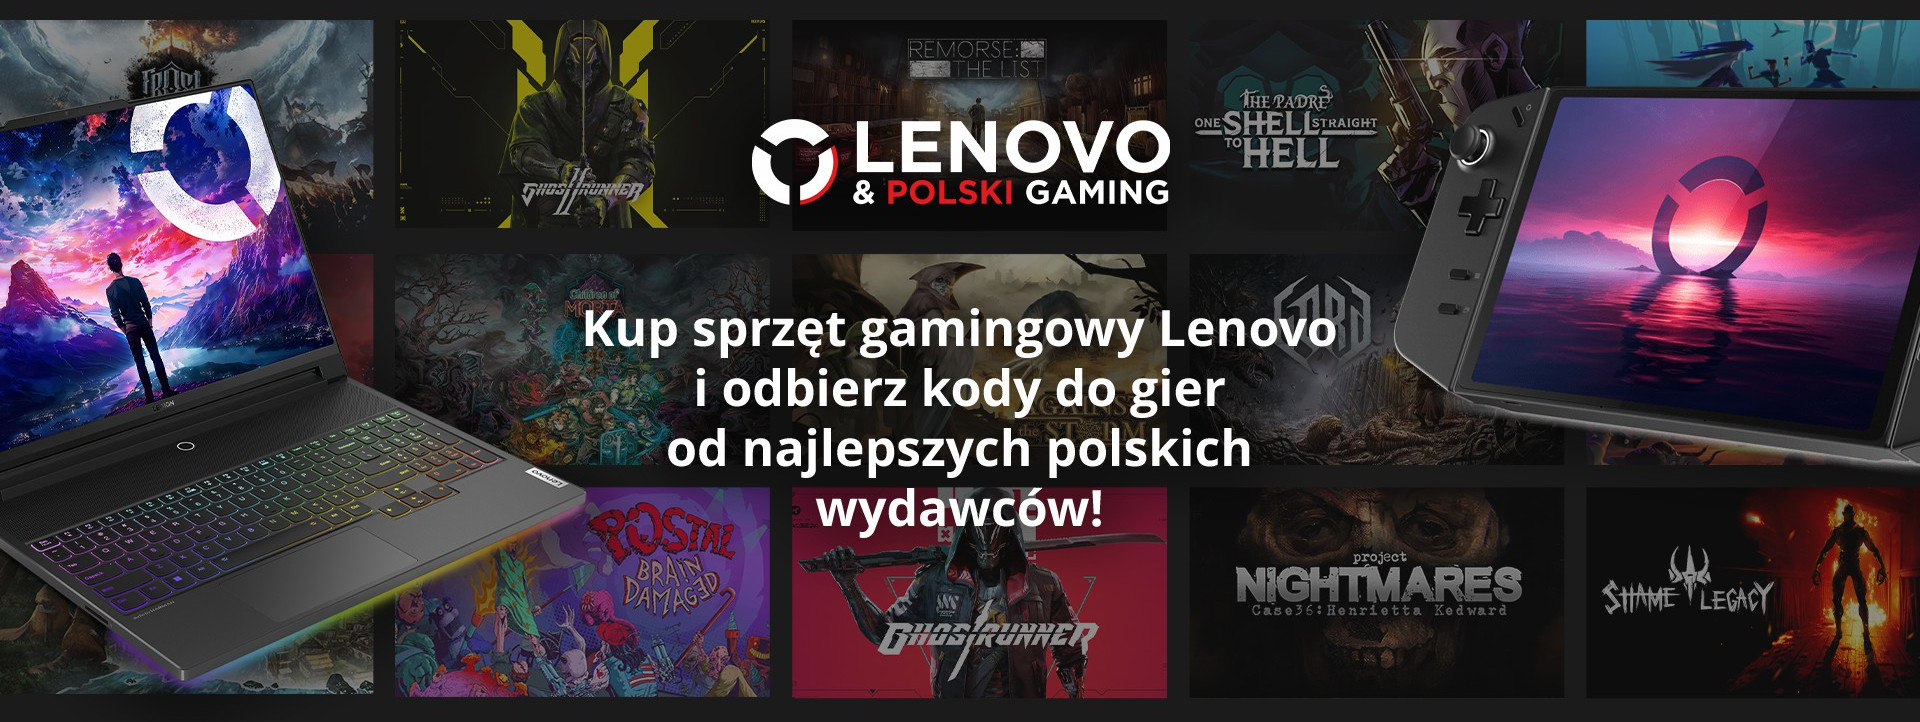 Lenovo & Polski Gaming